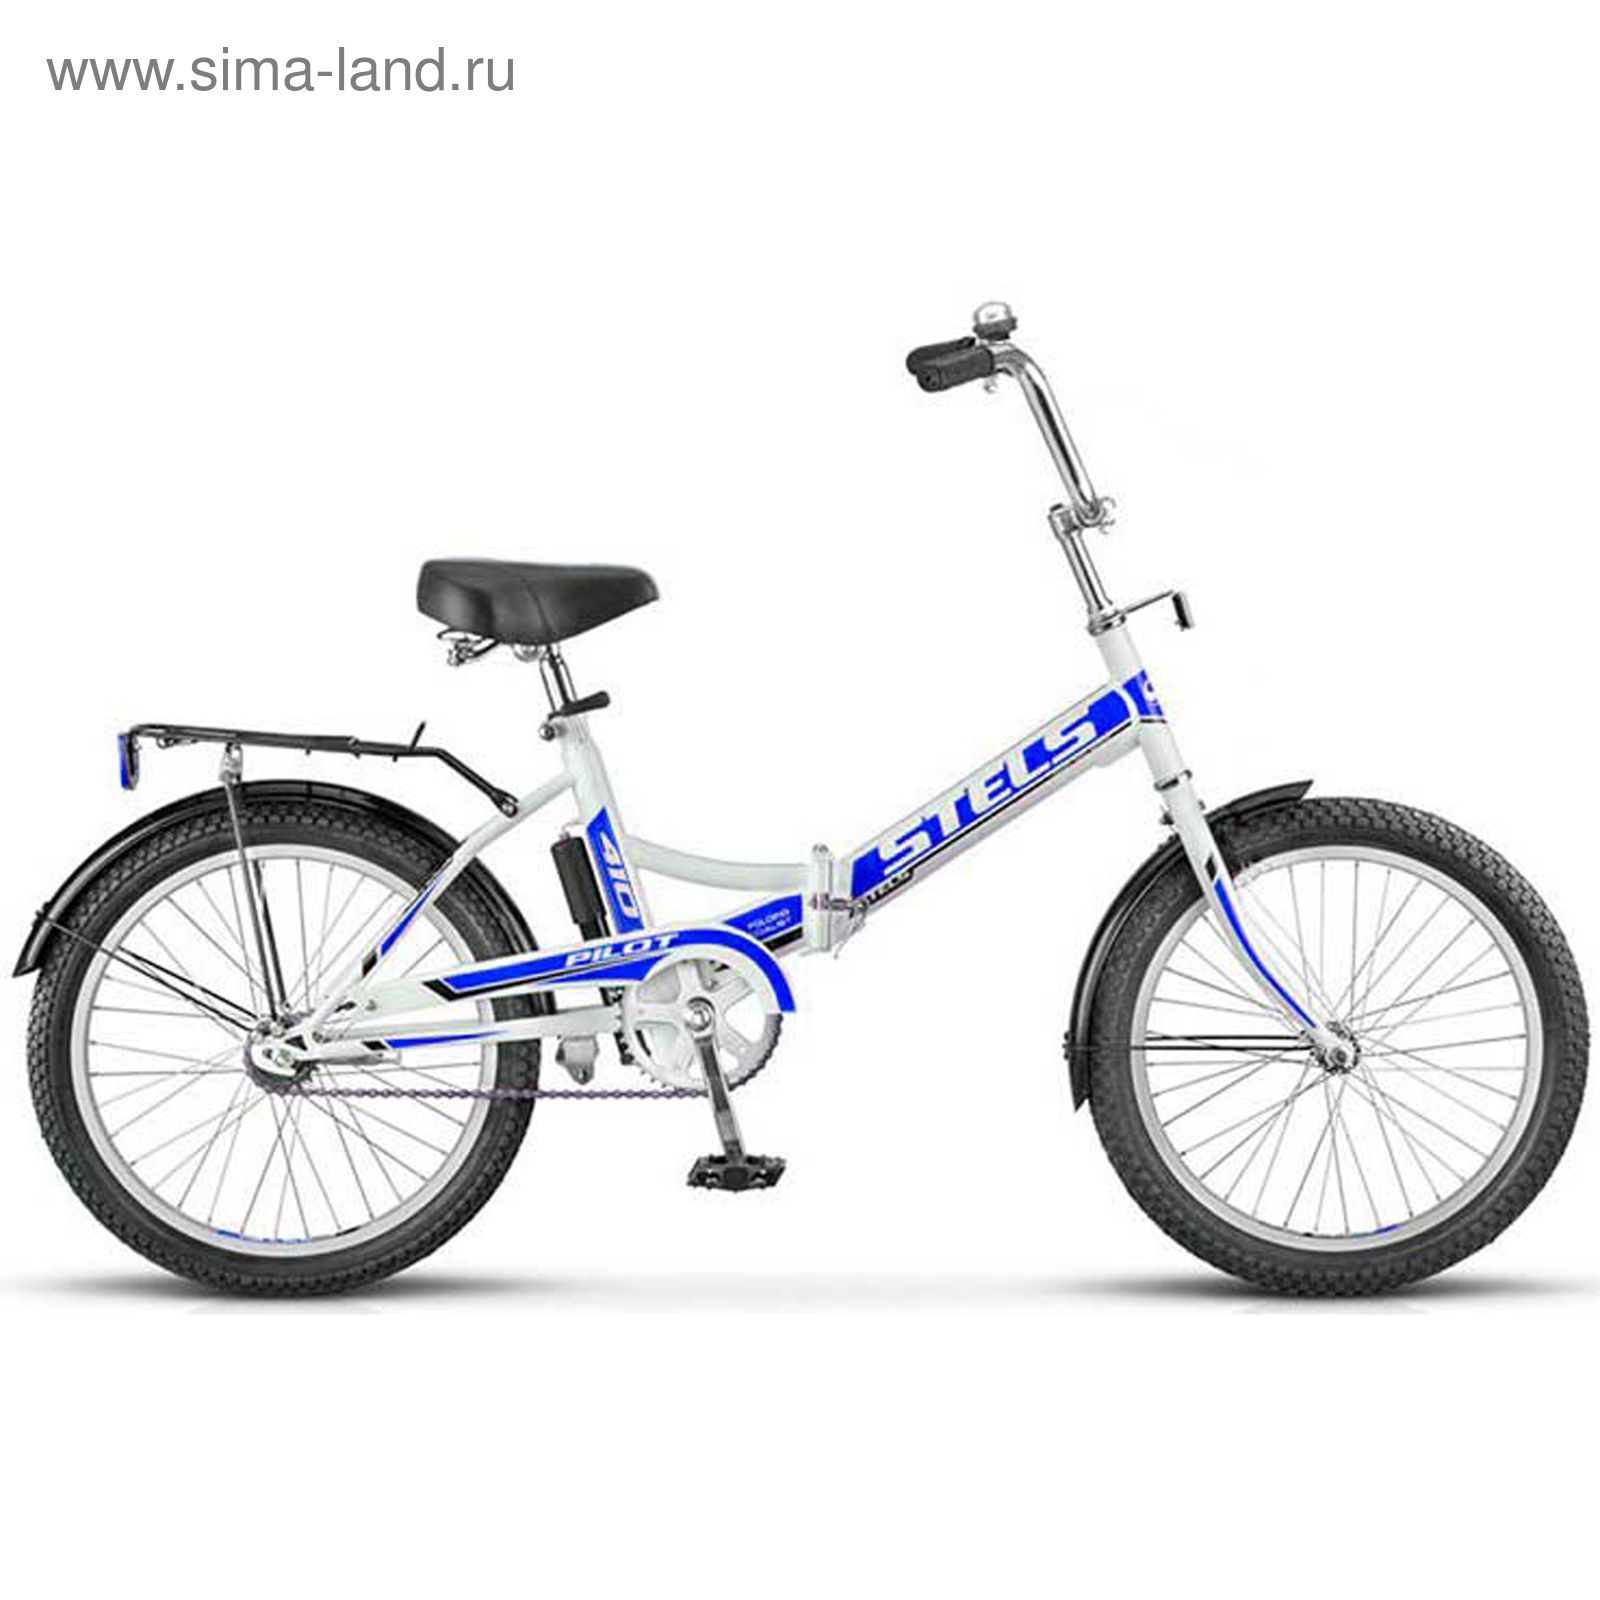 Велосипед 20" Stels Pilot-410, 2016, цвет белый/синий, размер 13,5"